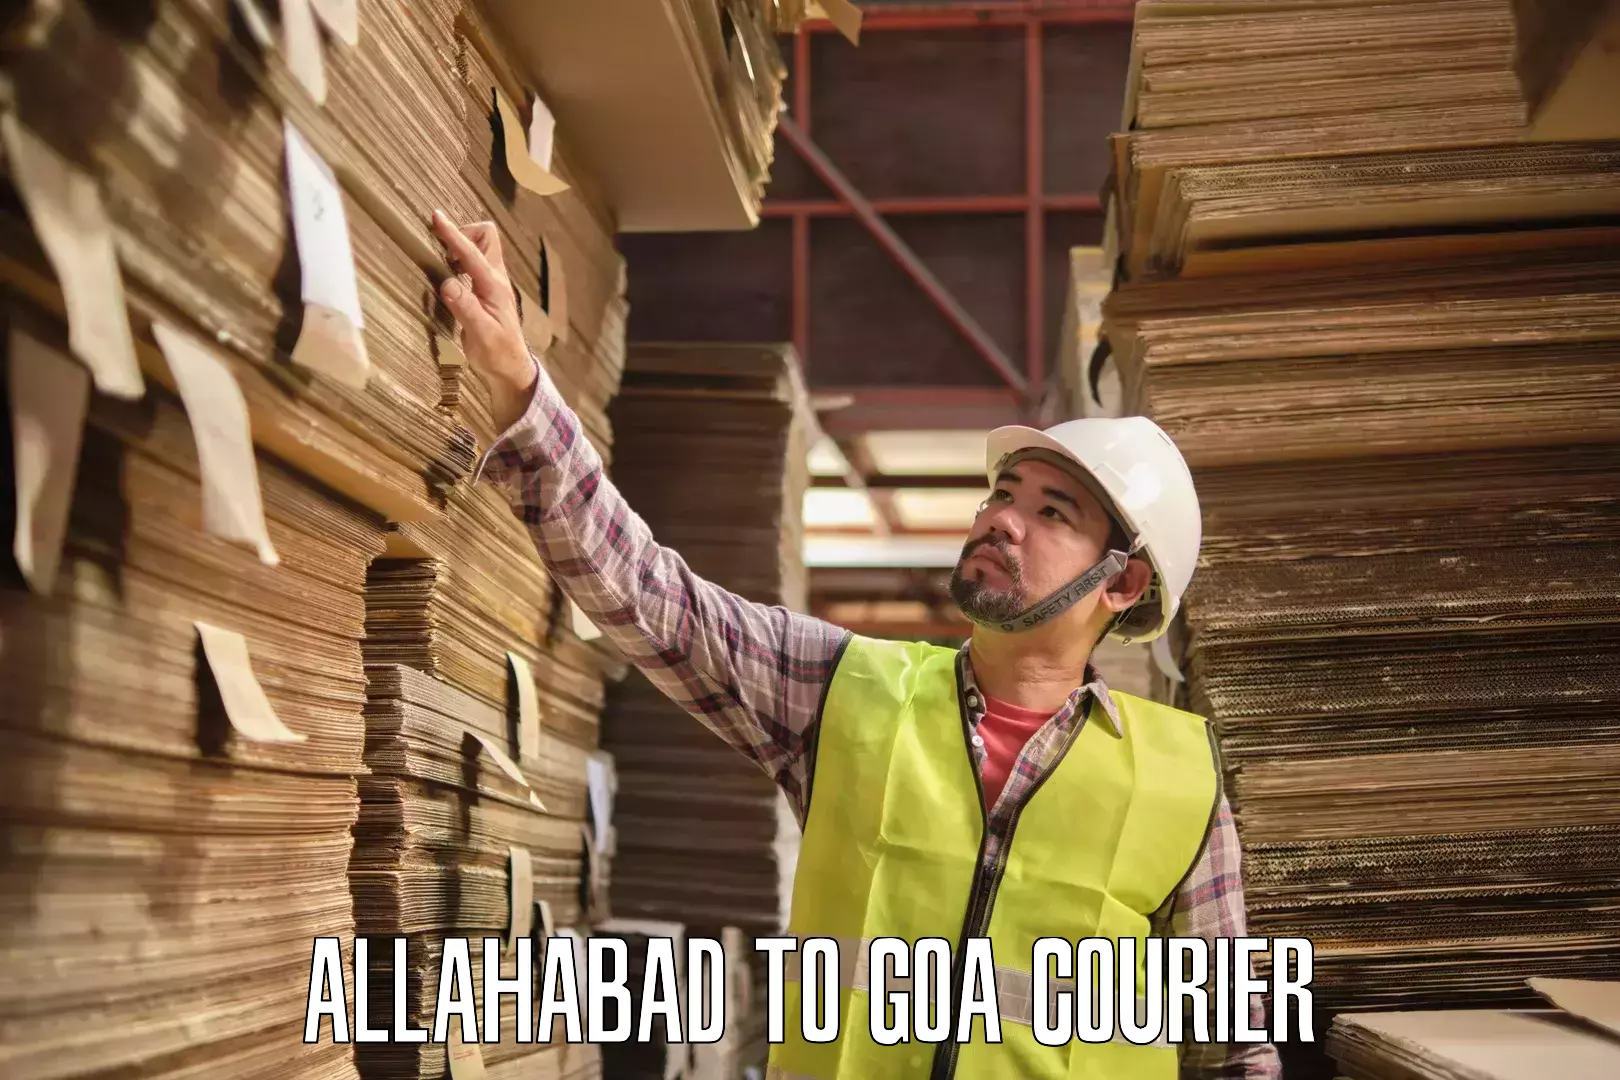 24-hour courier service Allahabad to Mormugao Port